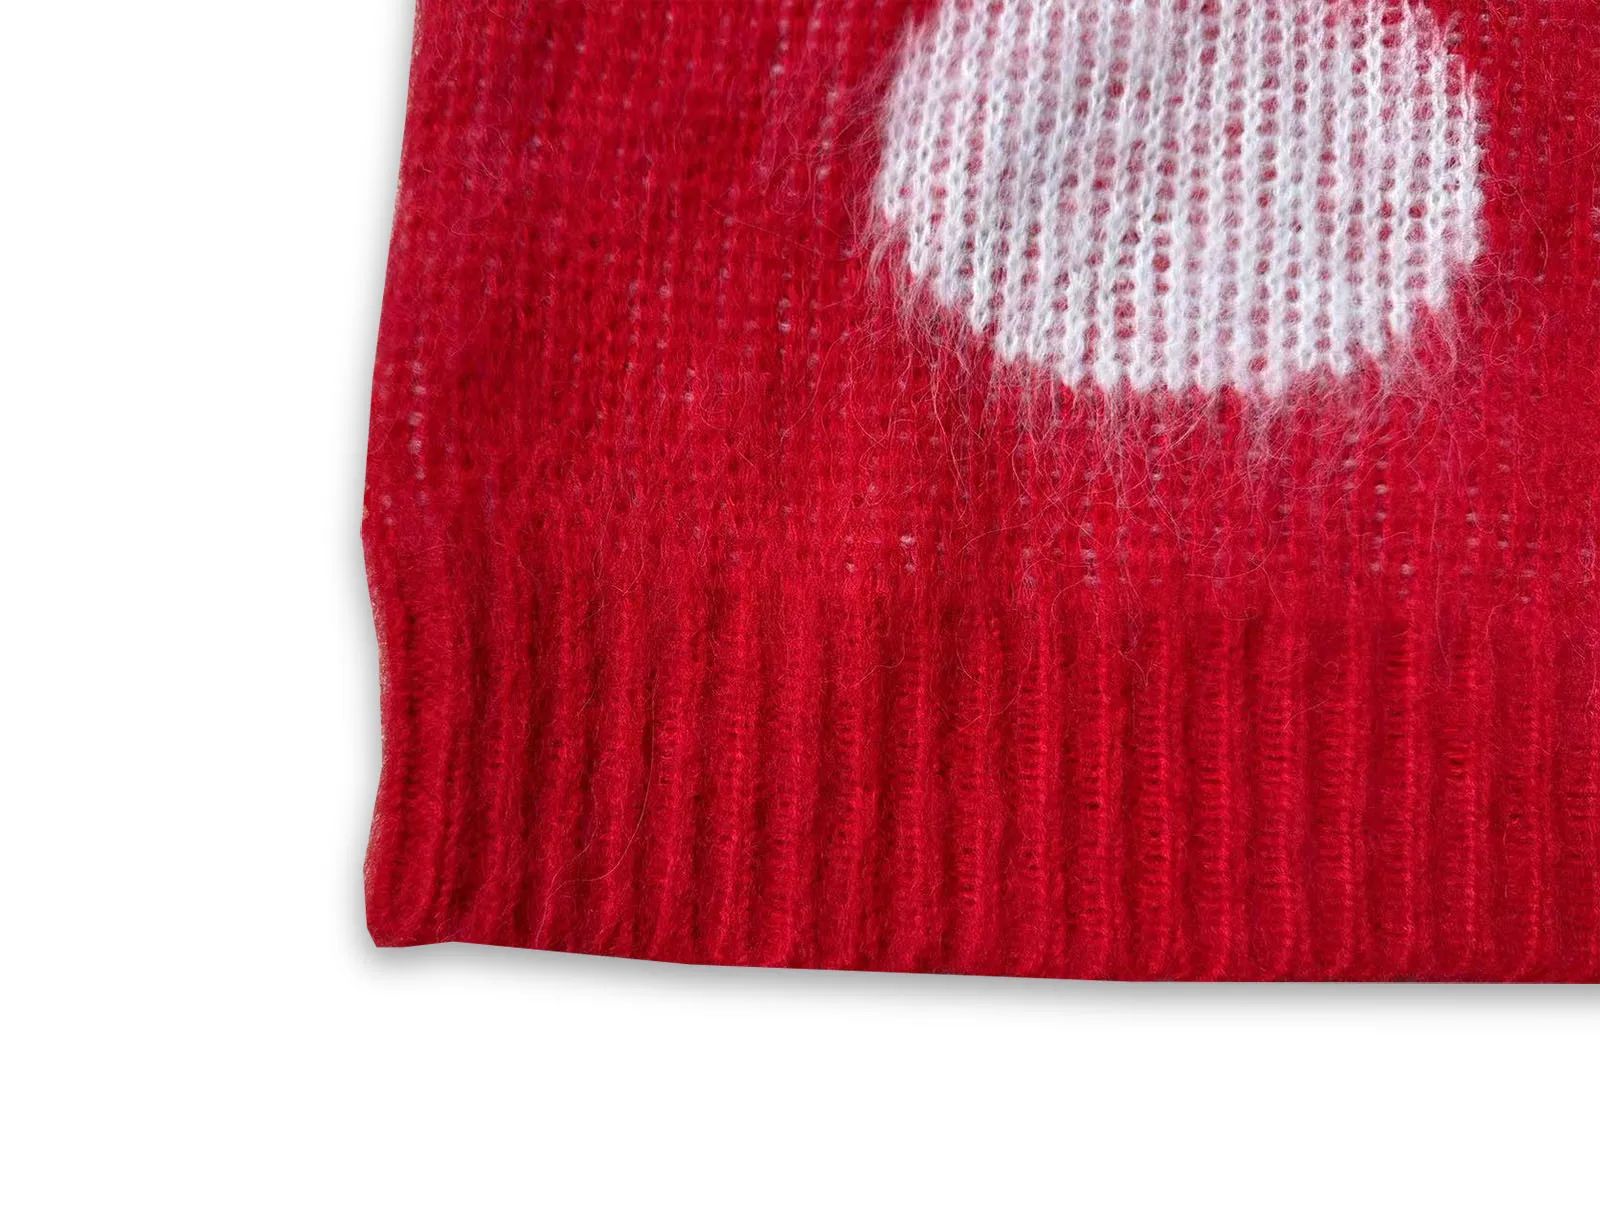 Красный свитер из мохера в белый горошек для мужчин и женщин лучшего качества с круглым вырезом, толстовки Оверсайз с длинными рукавами